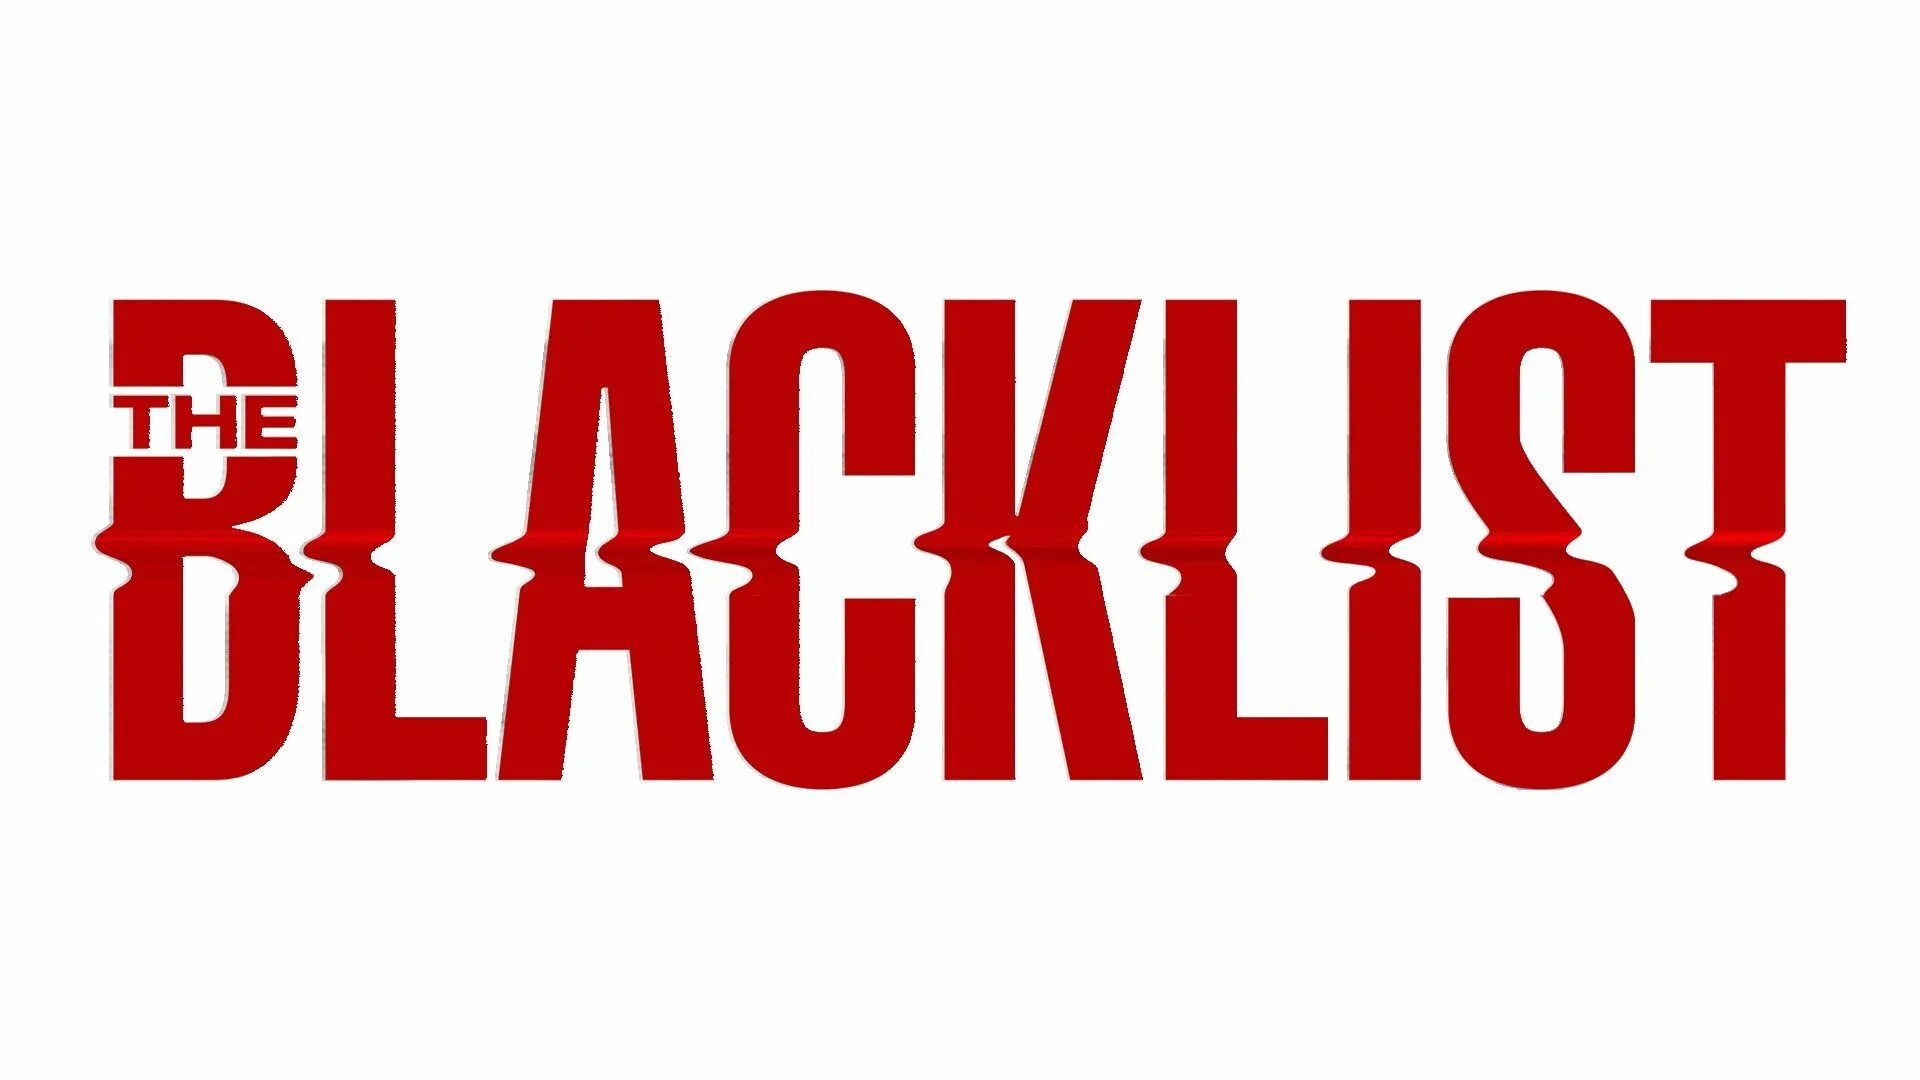 Чернеющий список. Blacklist картинка. Черный список / the Blacklist. Черный список логотип. Blacklist надпись.